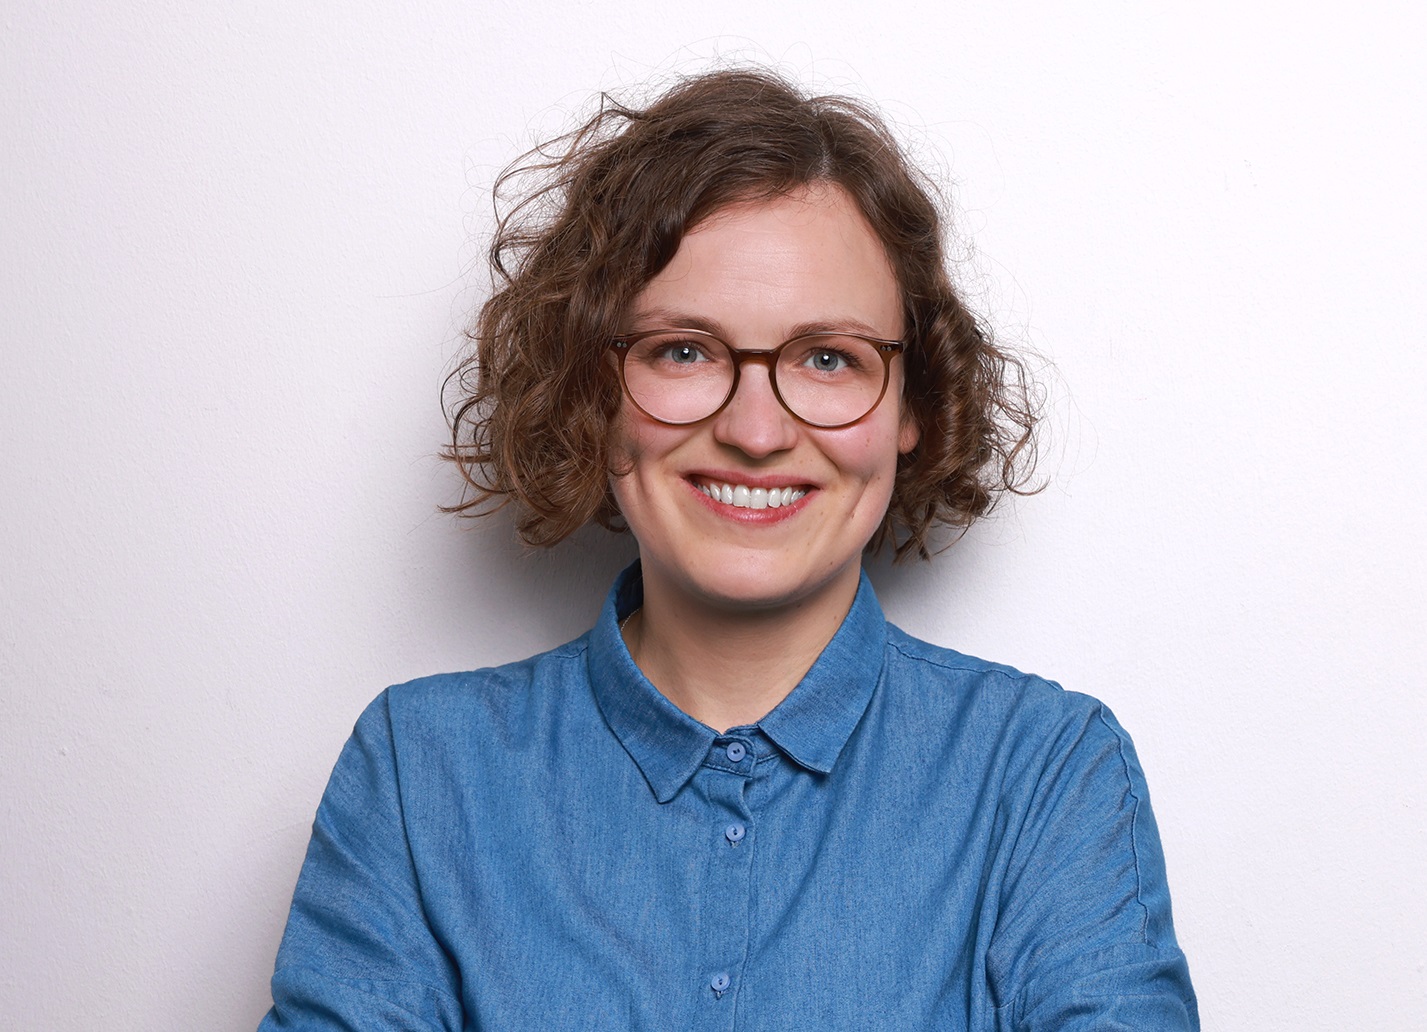 Profilbild von Karen Vogelpohl in einer blauen Bluse.